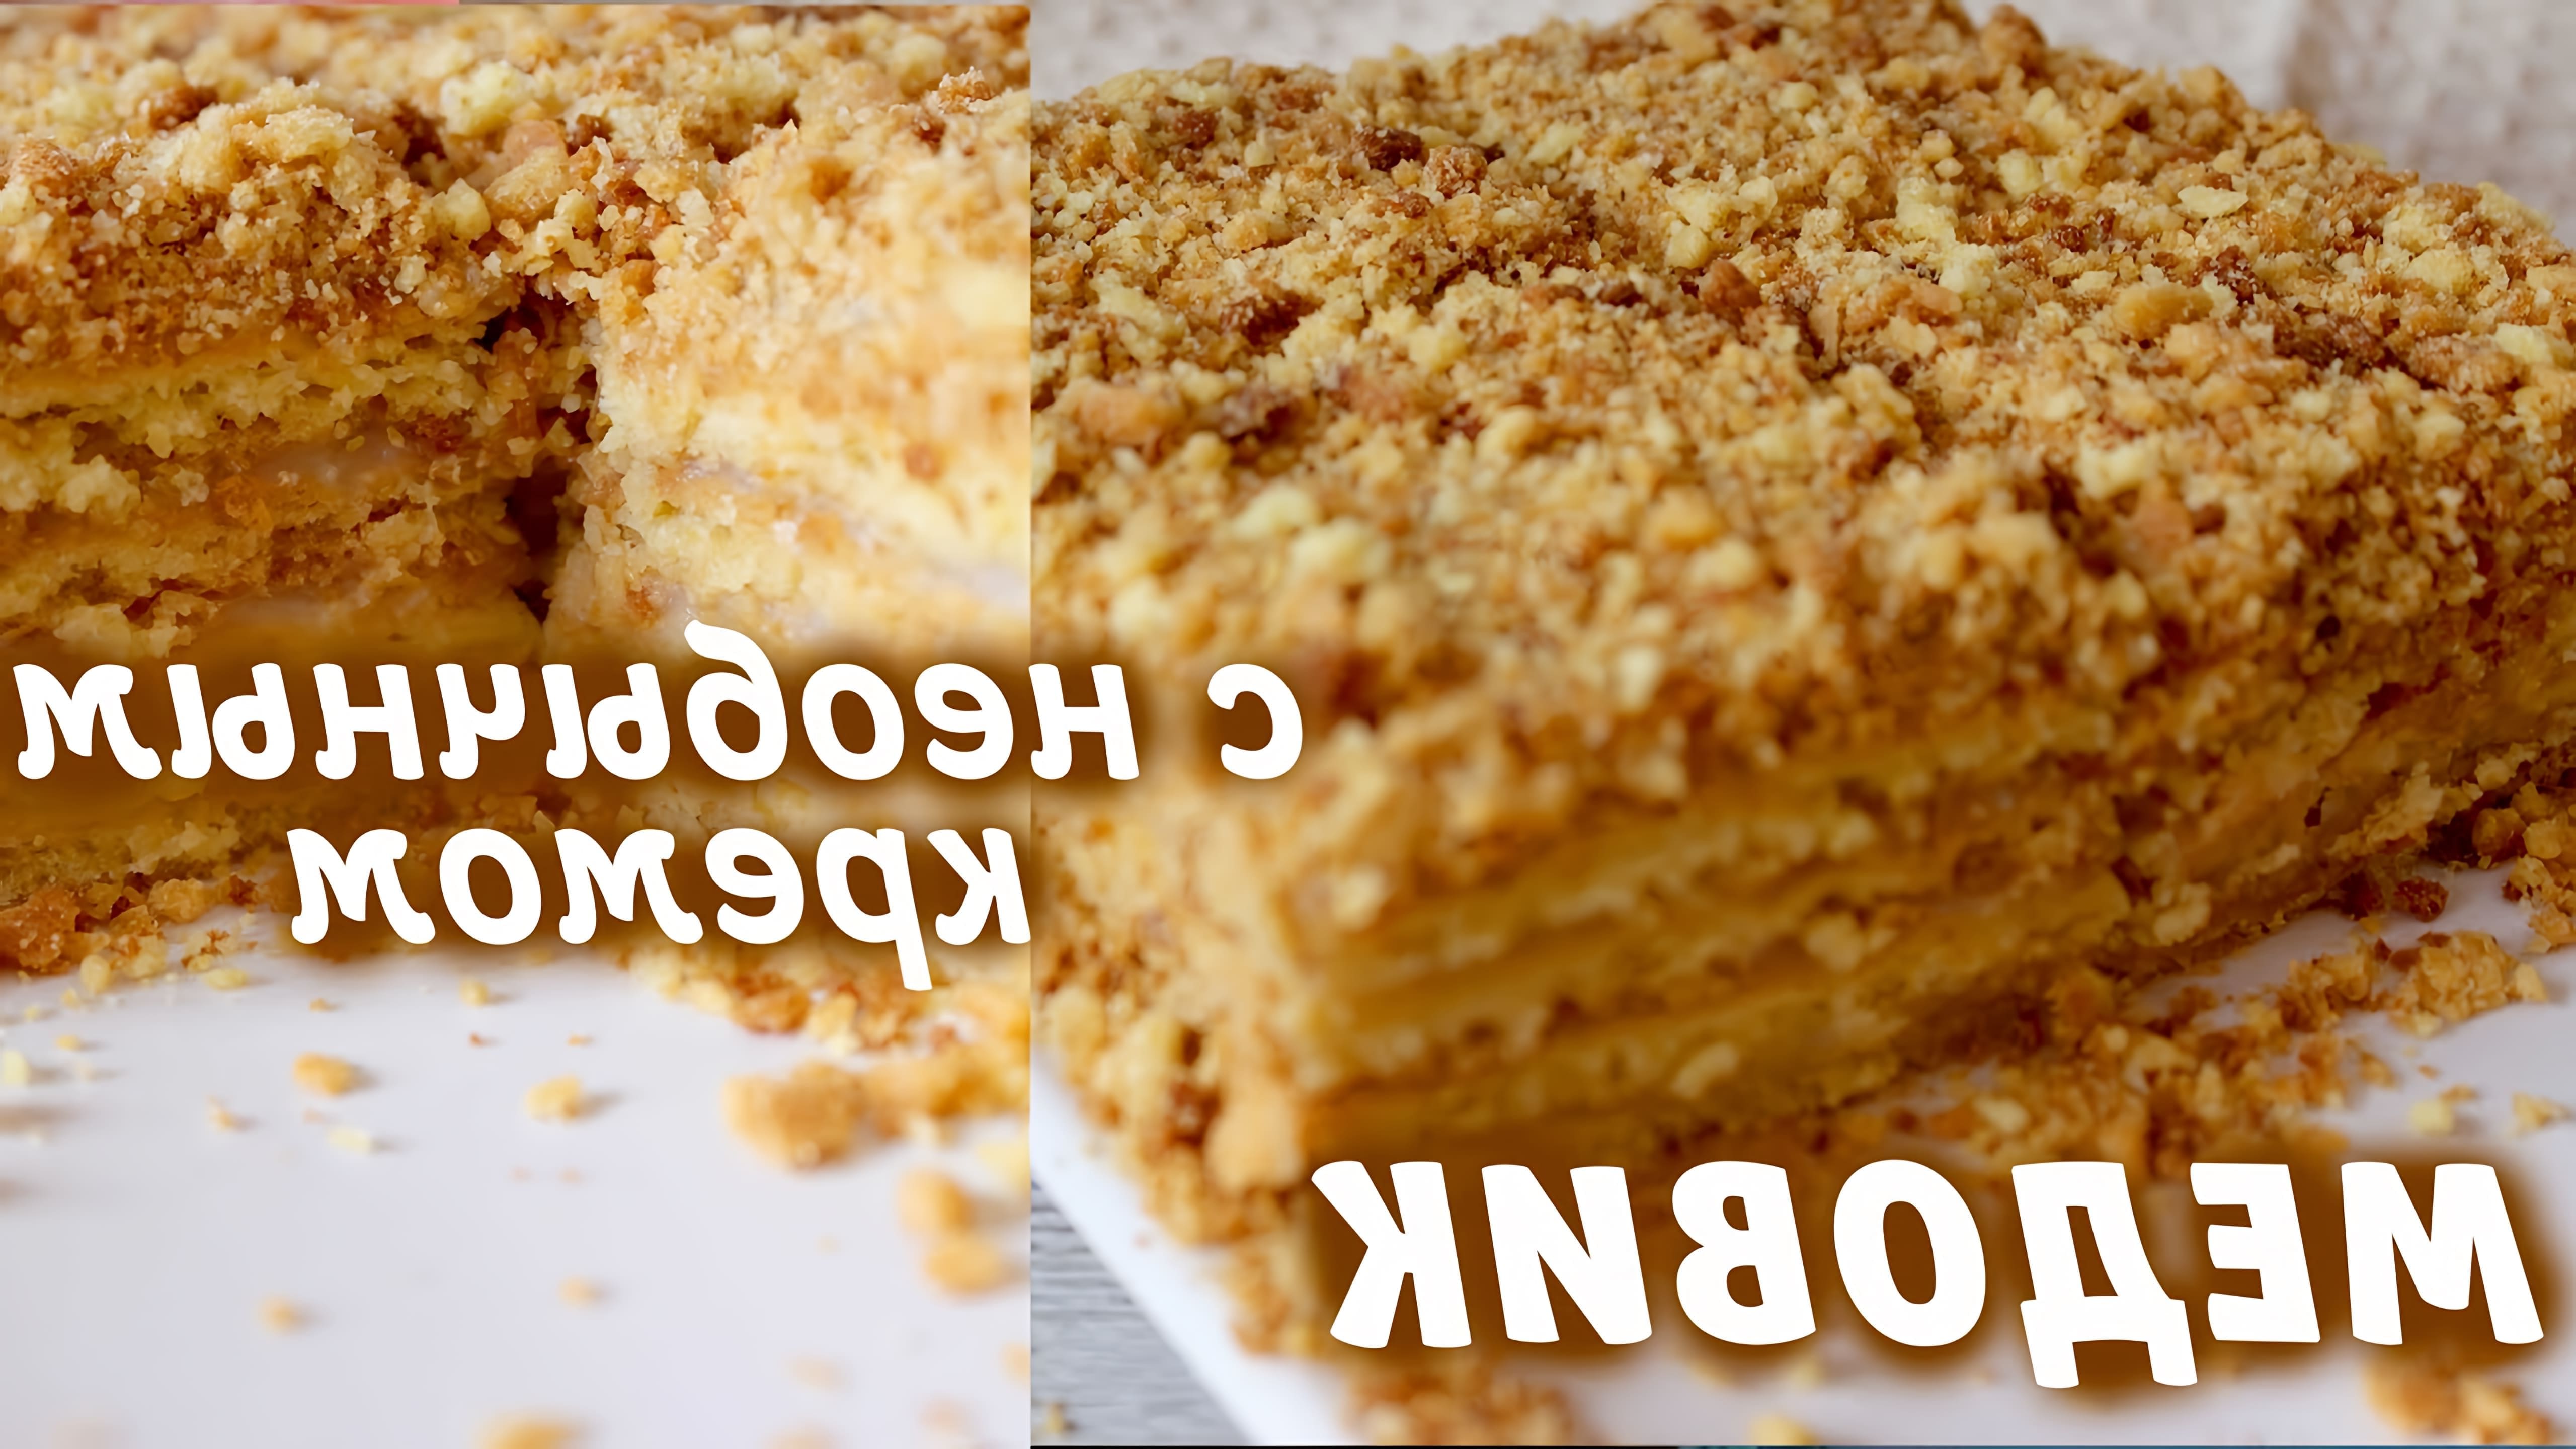 В этом видео демонстрируется рецепт приготовления торта "Медовик" с низкокалорийным кремом